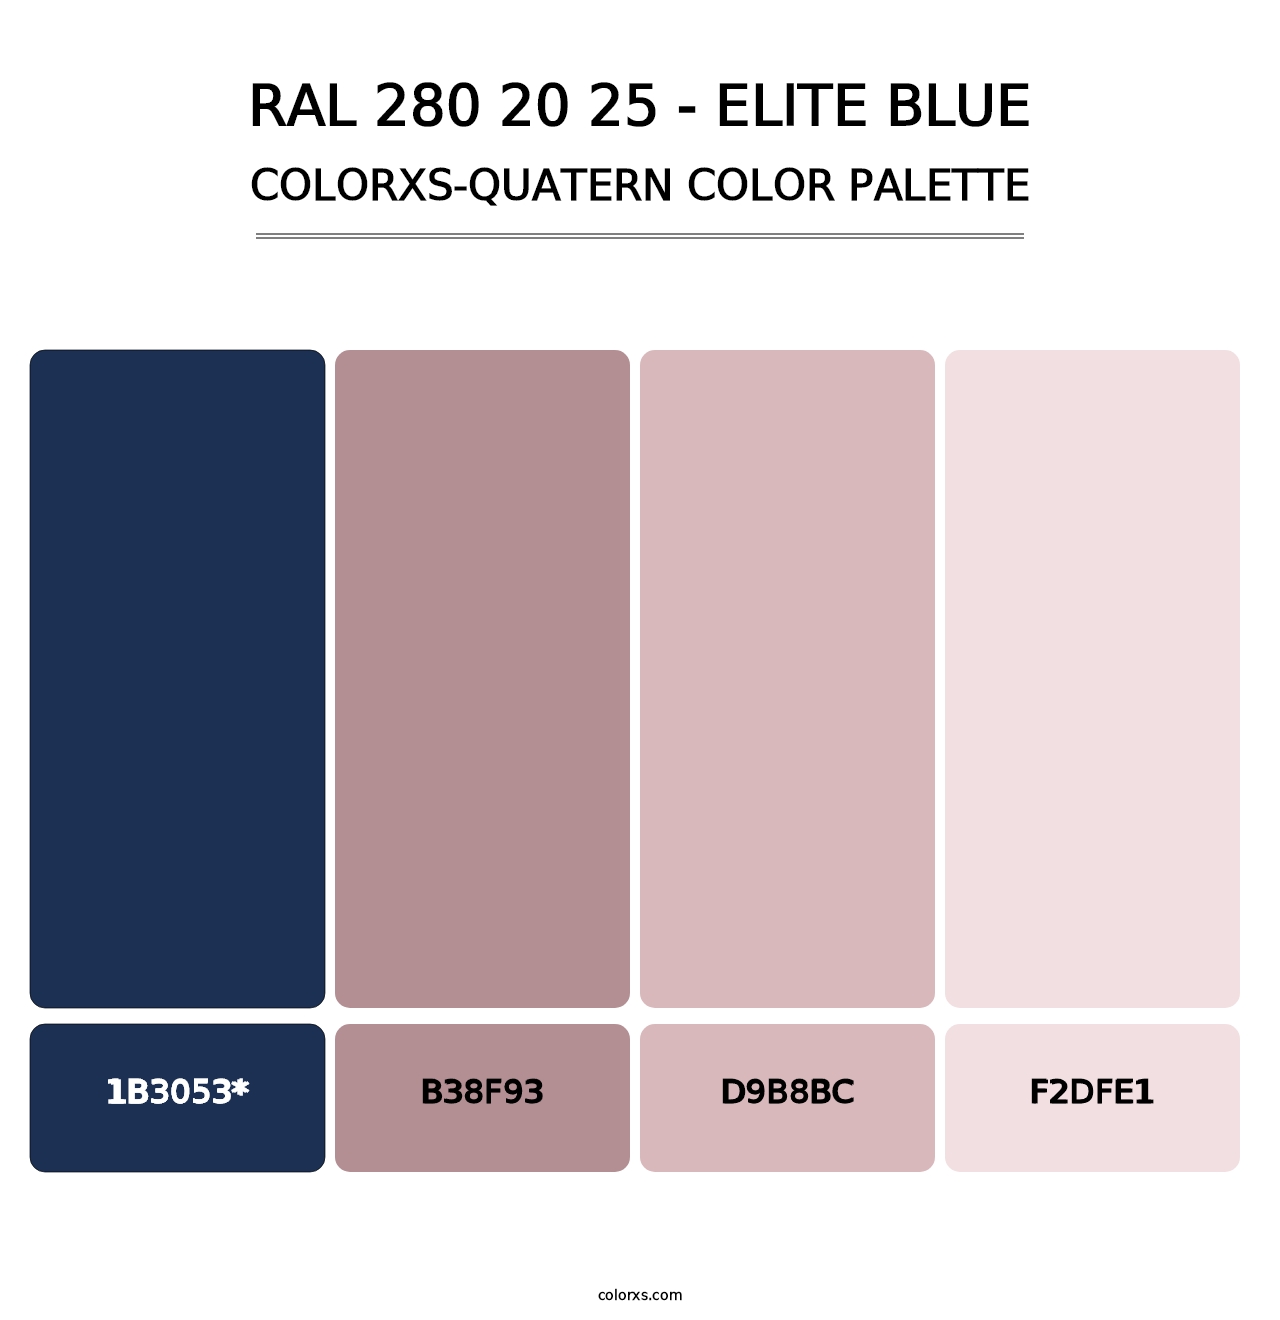 RAL 280 20 25 - Elite Blue - Colorxs Quatern Palette